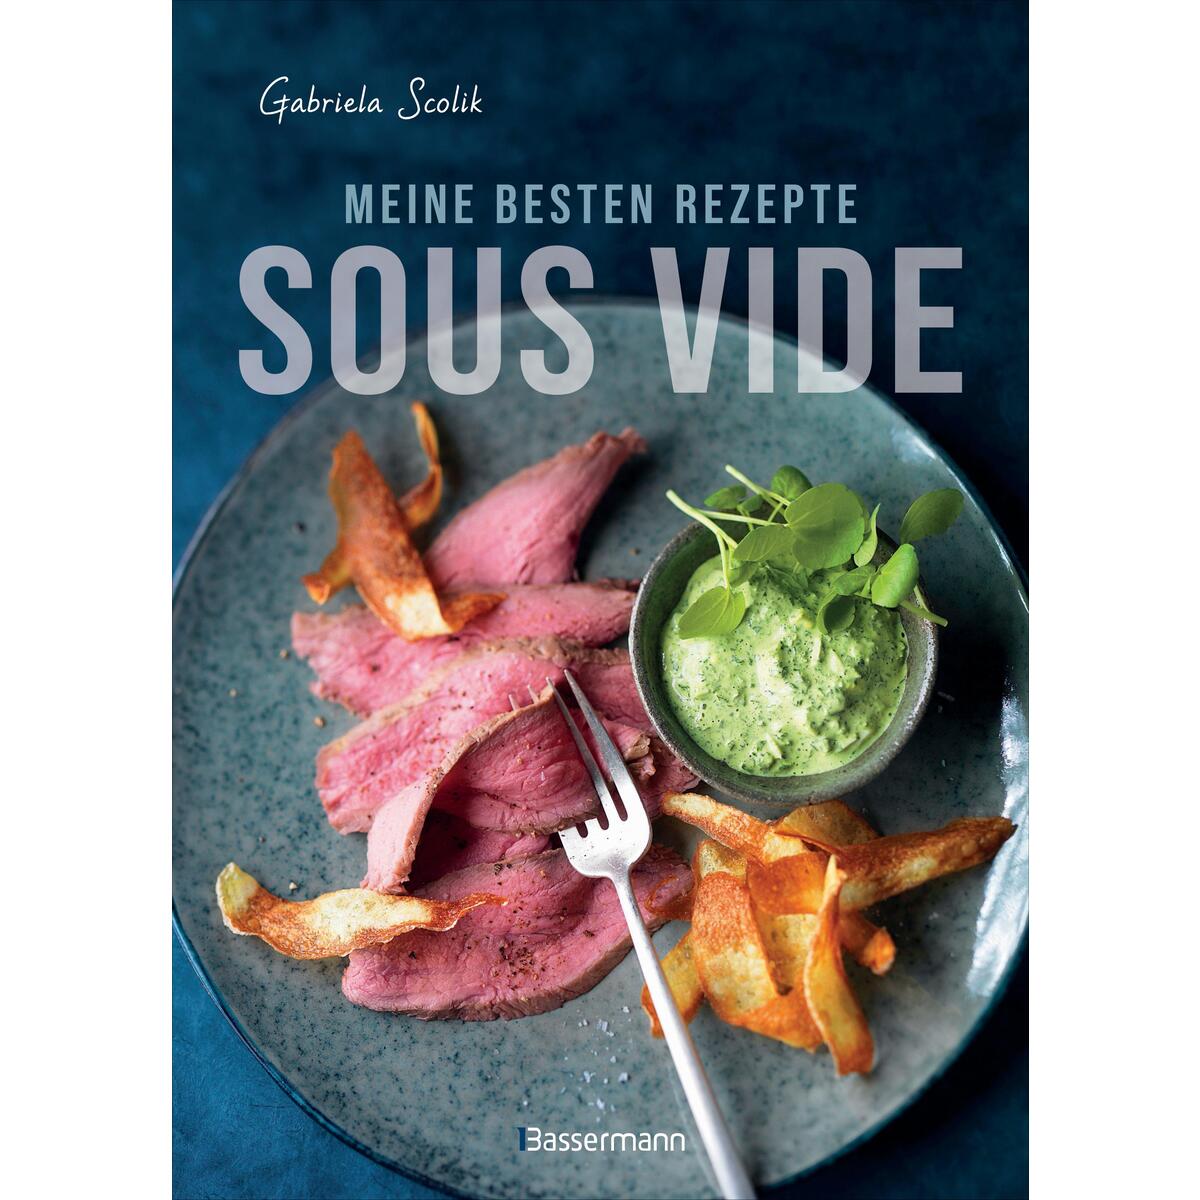 Sous Vide - Die besten Rezepte für zartes Fleisch, saftigen Fisch und aromatisch... von Bassermann, Edition